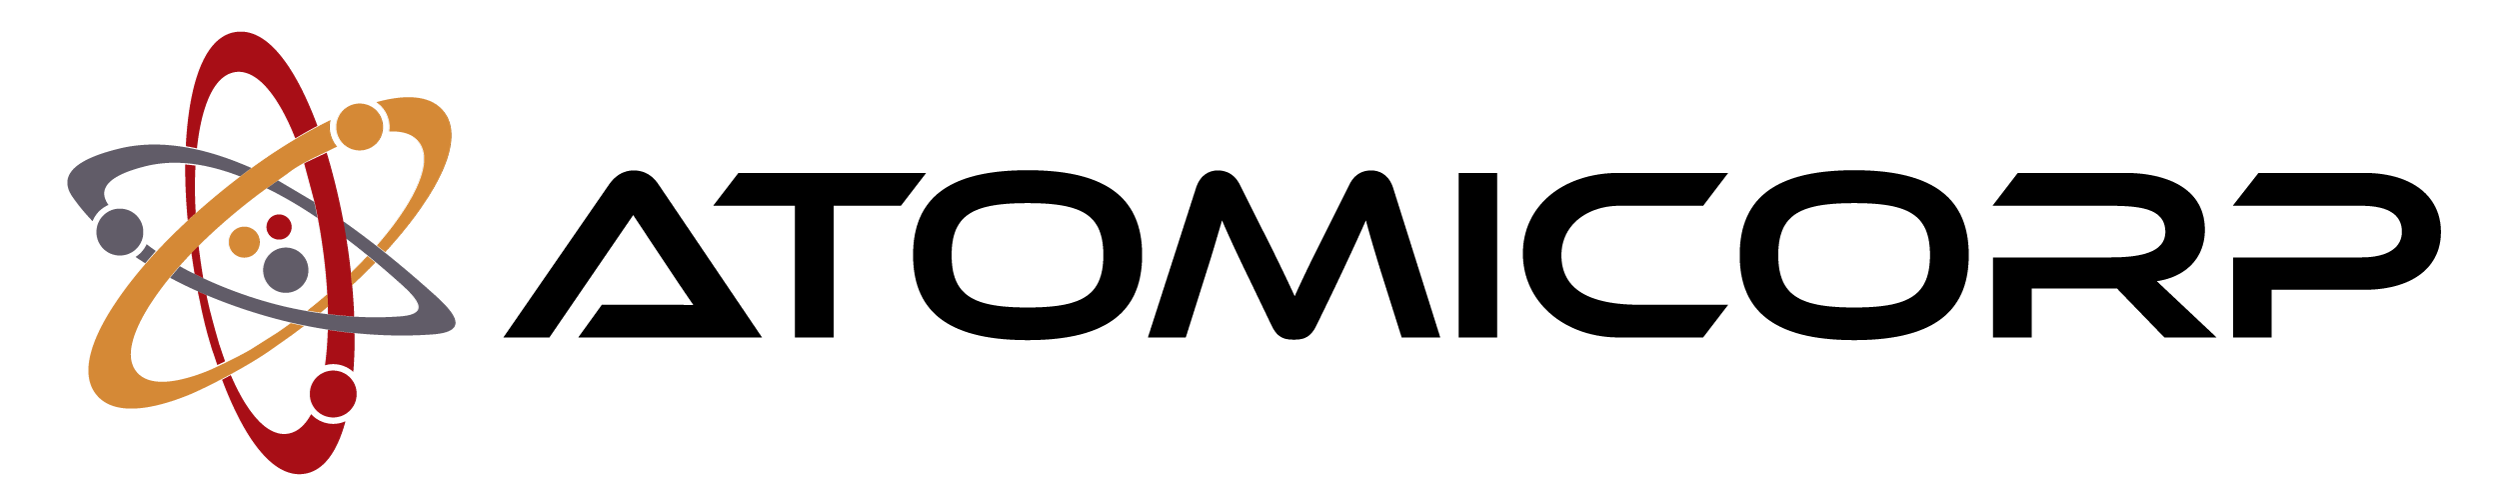 Atomicorp logo